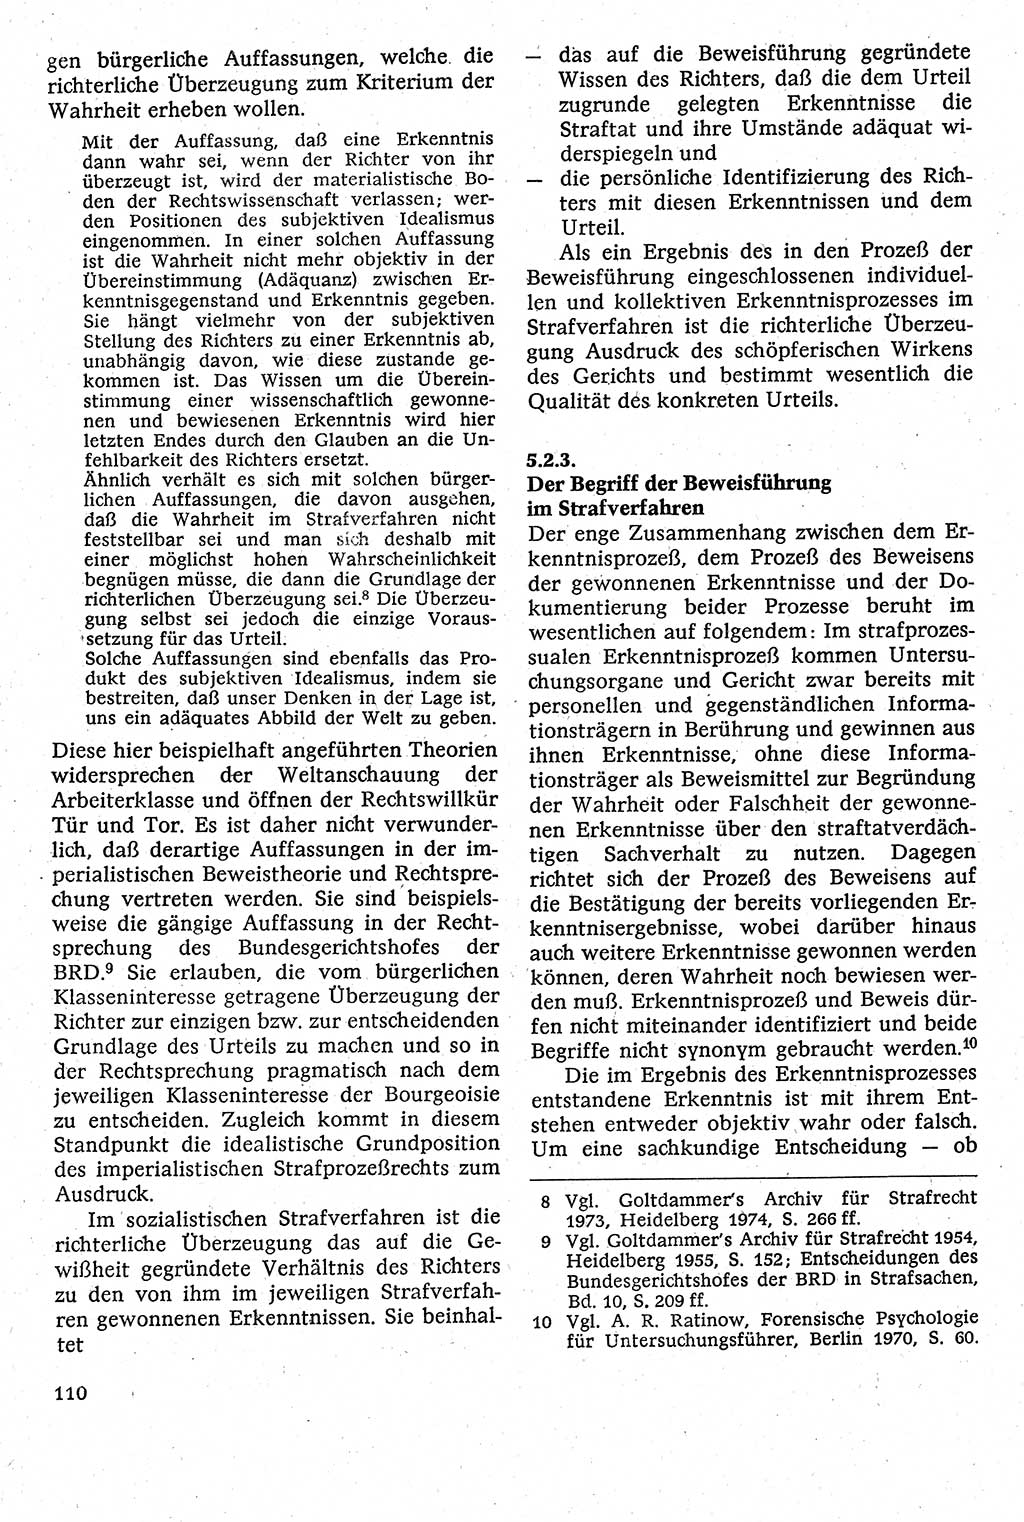 Strafverfahrensrecht [Deutsche Demokratische Republik (DDR)], Lehrbuch 1982, Seite 110 (Strafverf.-R. DDR Lb. 1982, S. 110)